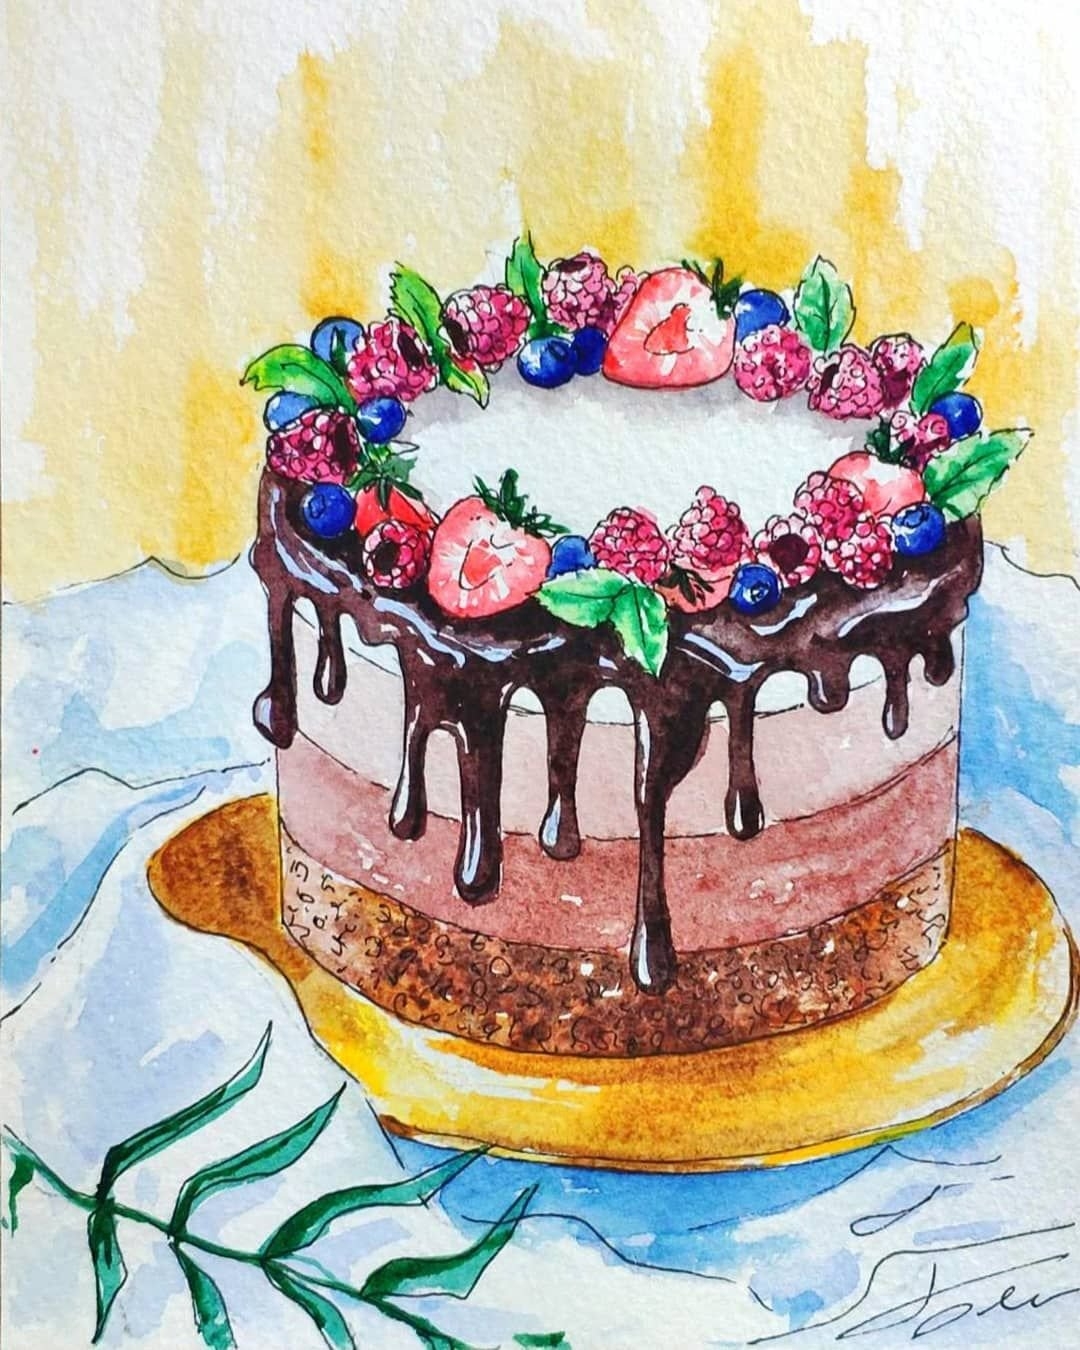 ШОКОЛАДНЫЙ торт с ЯГОДАМИ | Вкусный торт украшенный ягодами (рецепт торта) | Chocolate Cake recipe